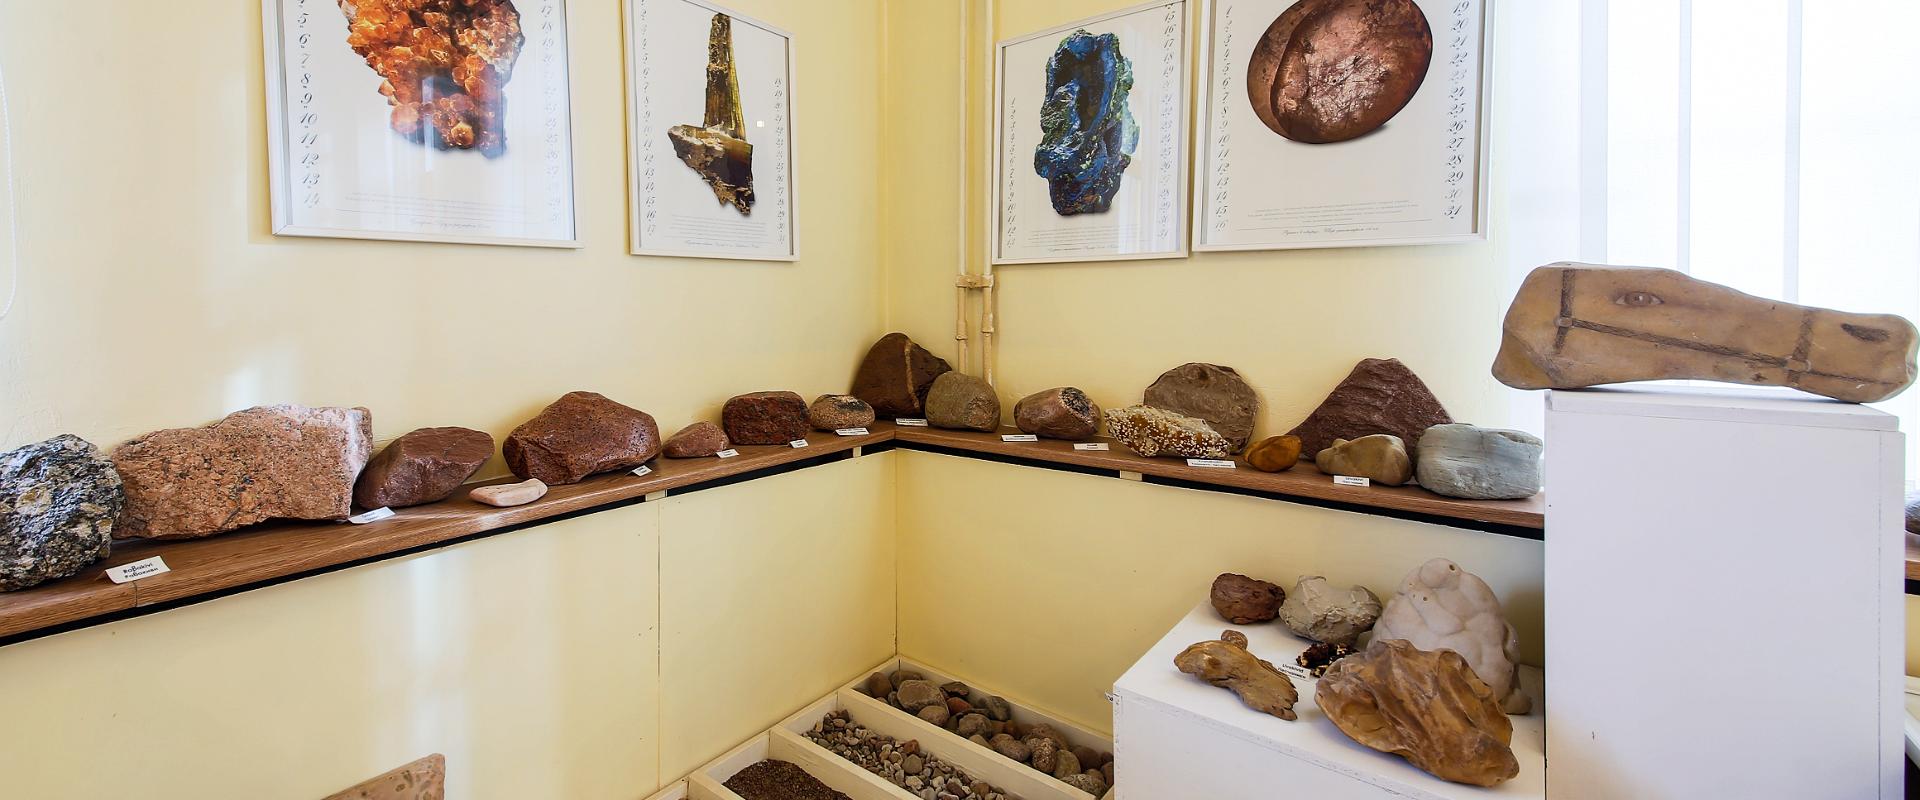 Sillamäe Muuseumi mineraloogia saal